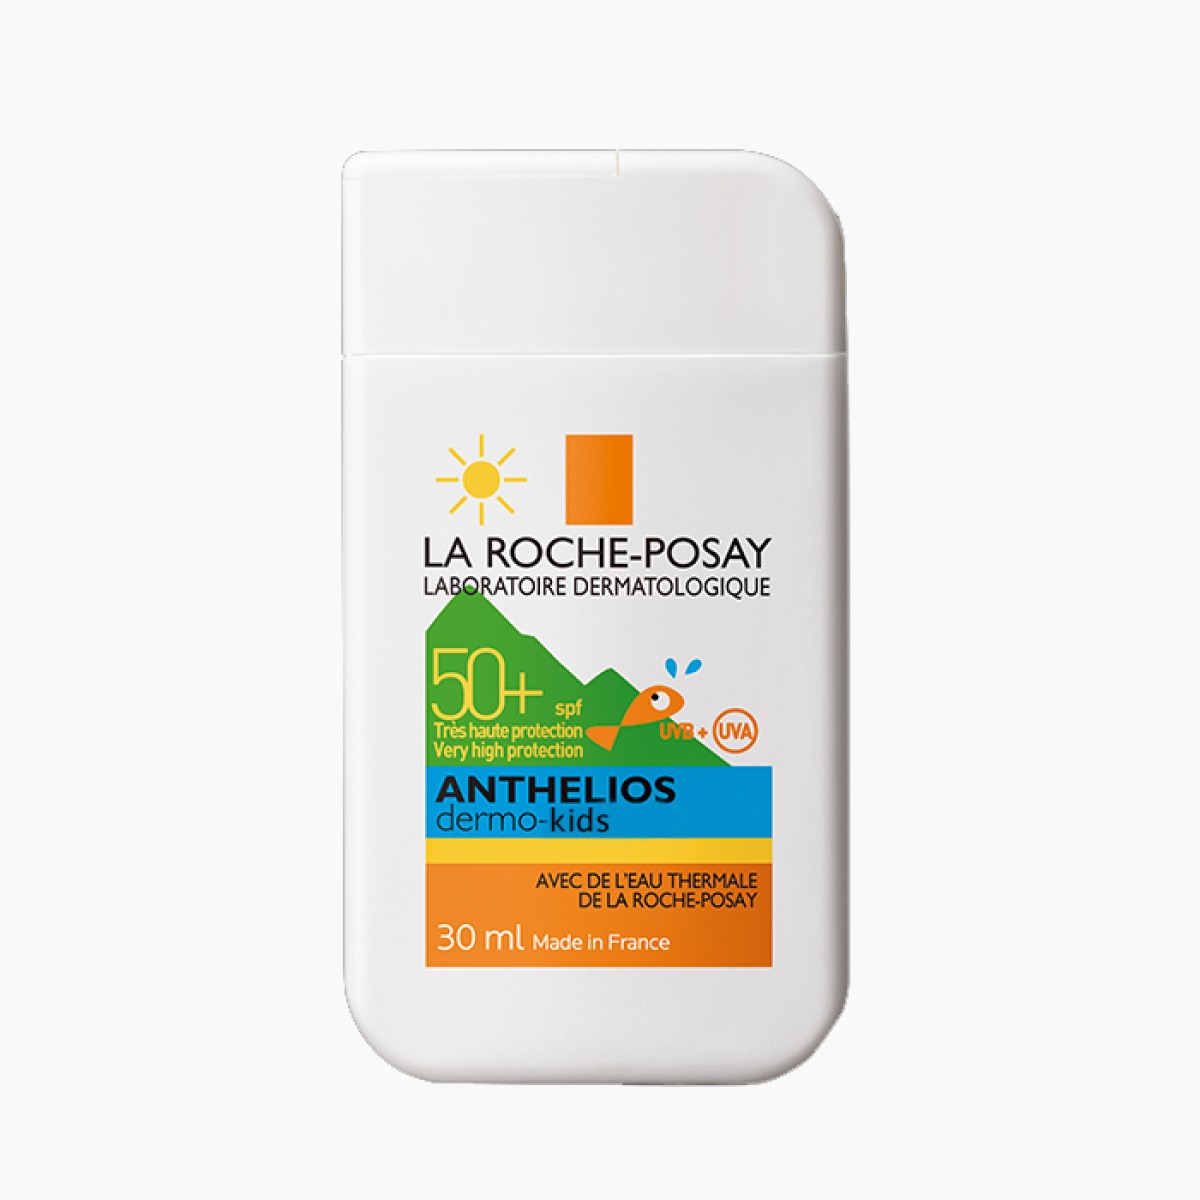 La Roche Posay | Anthelios 50+ Dermo-Kids Pocket Size | 30ml